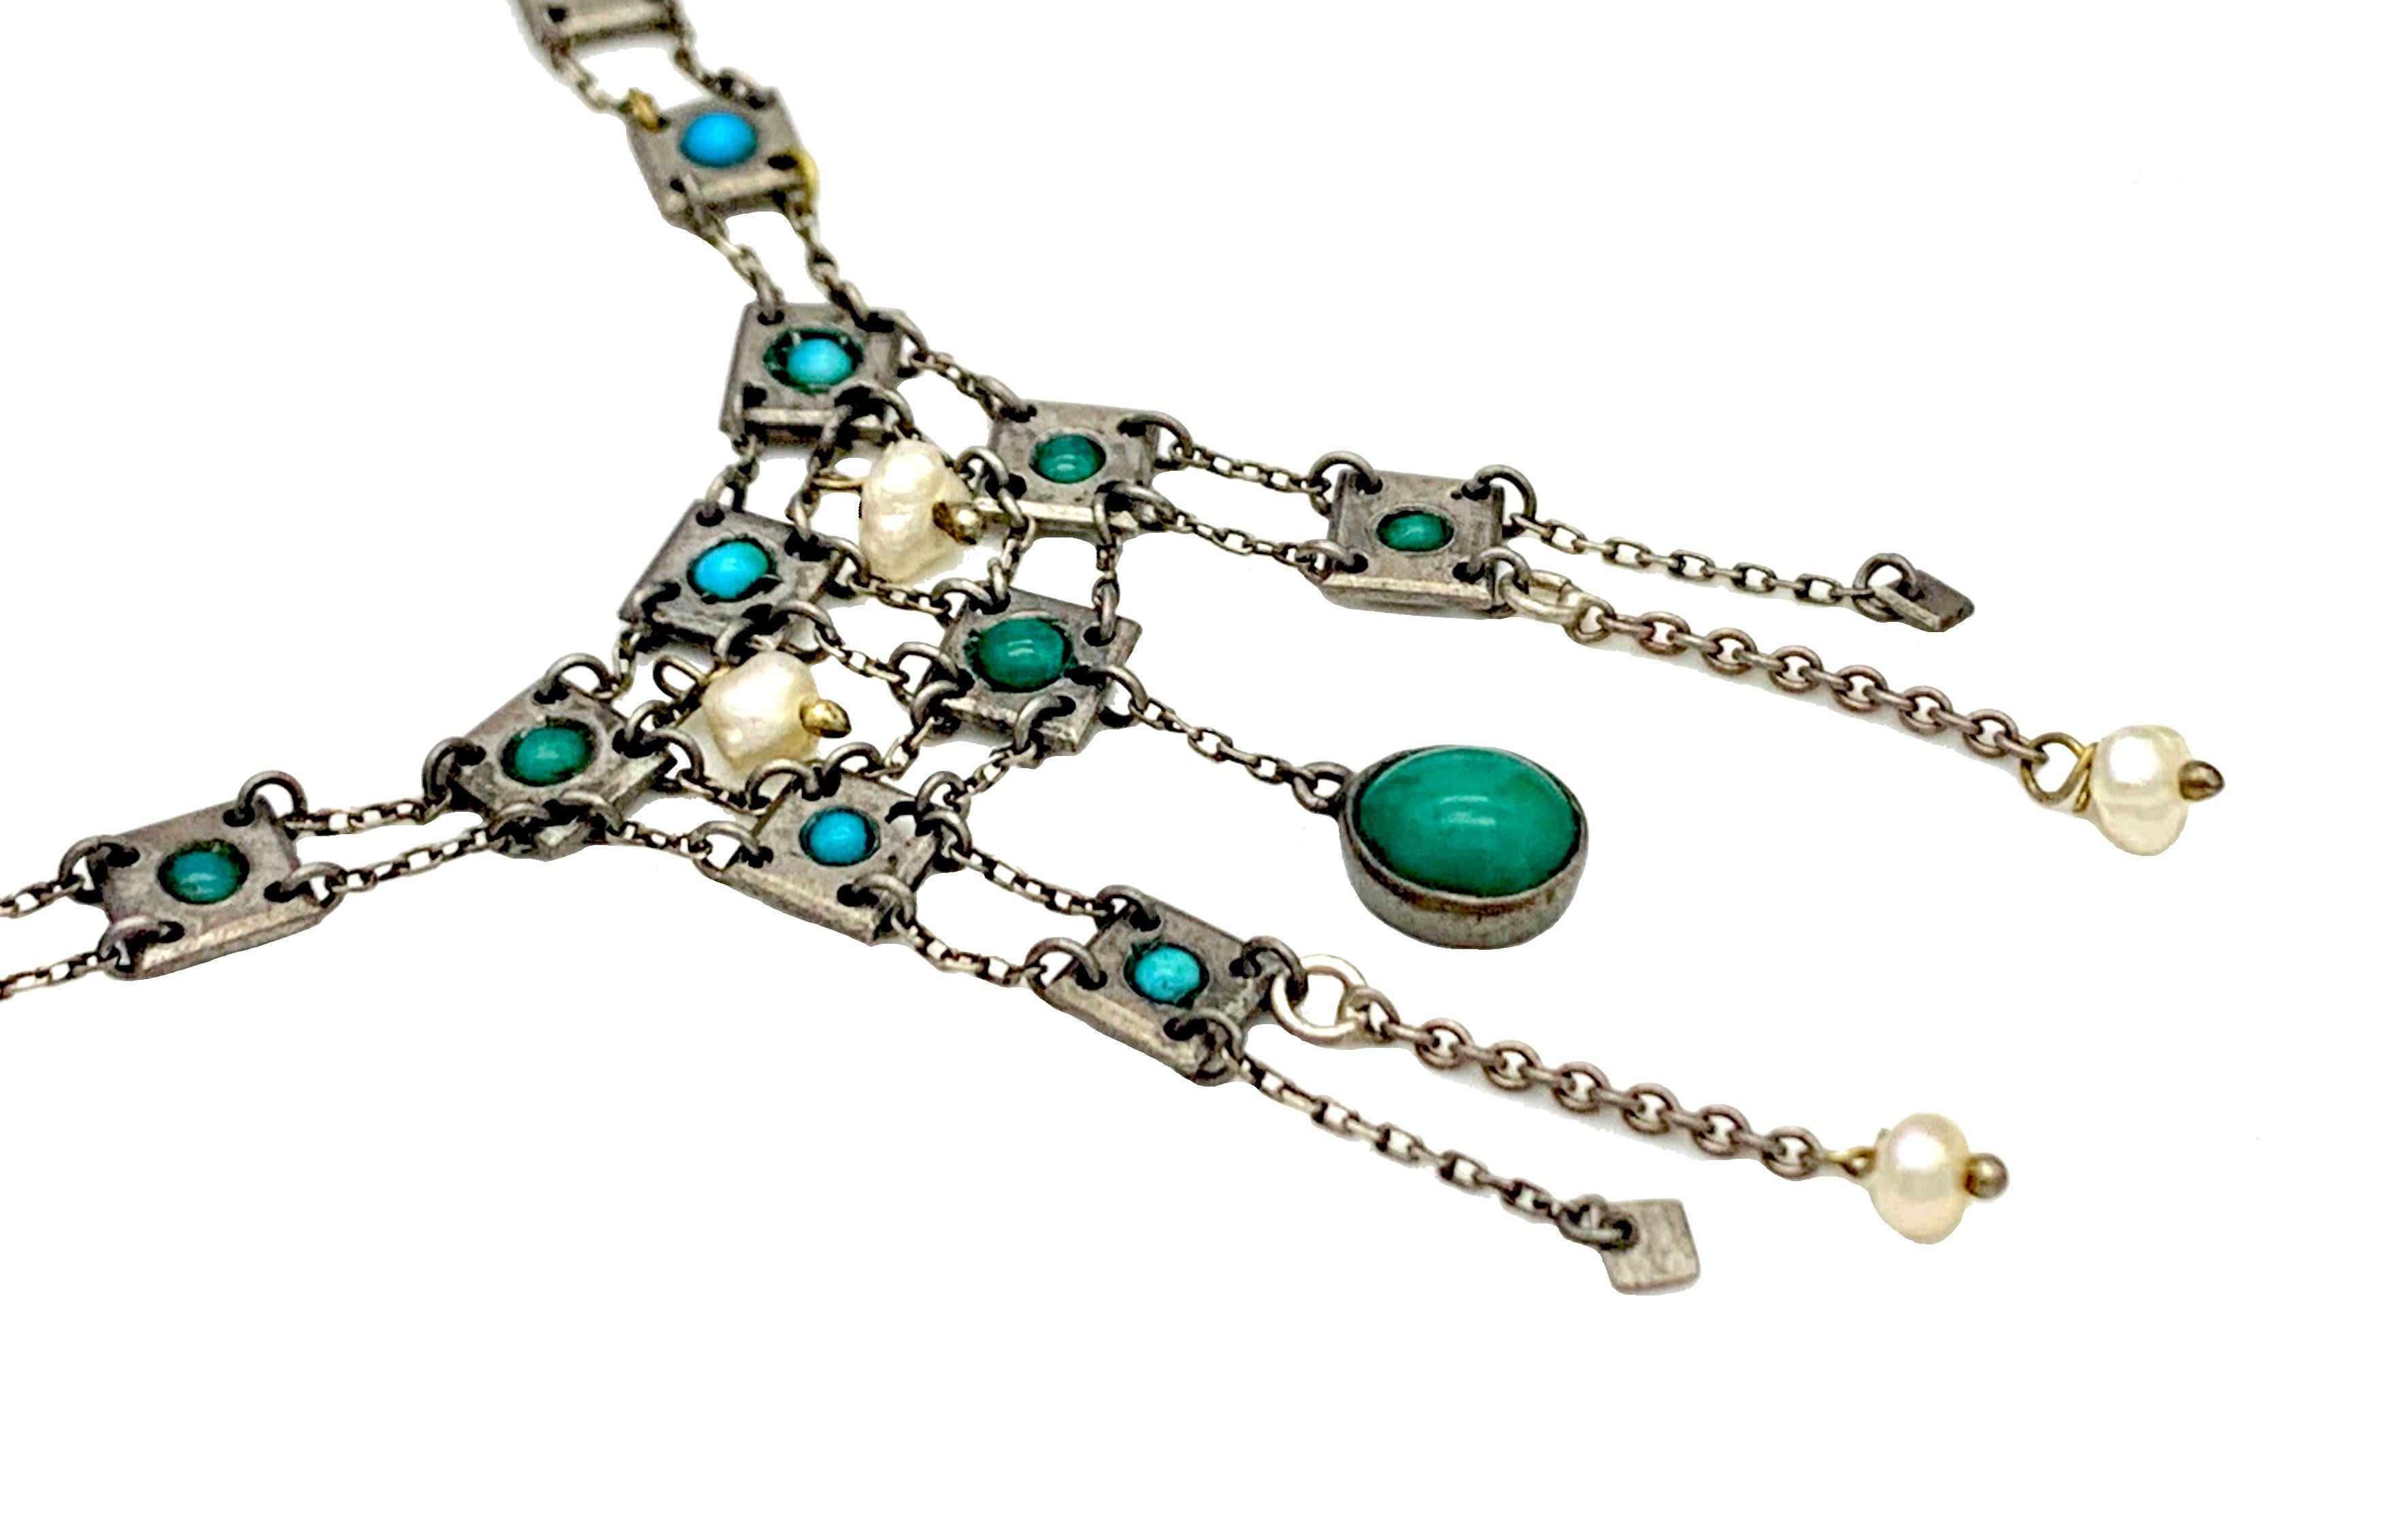 Diese zarte, biegsame Halskette mit baumelnden Gliedern wurde um 1905 im sezessionistischen Stil gefertigt. Es ist höchstwahrscheinlich europäischen Ursprungs, aber eine Zuordnung zu einem bestimmten Land ist nicht einfach.
Er ist aus Metall